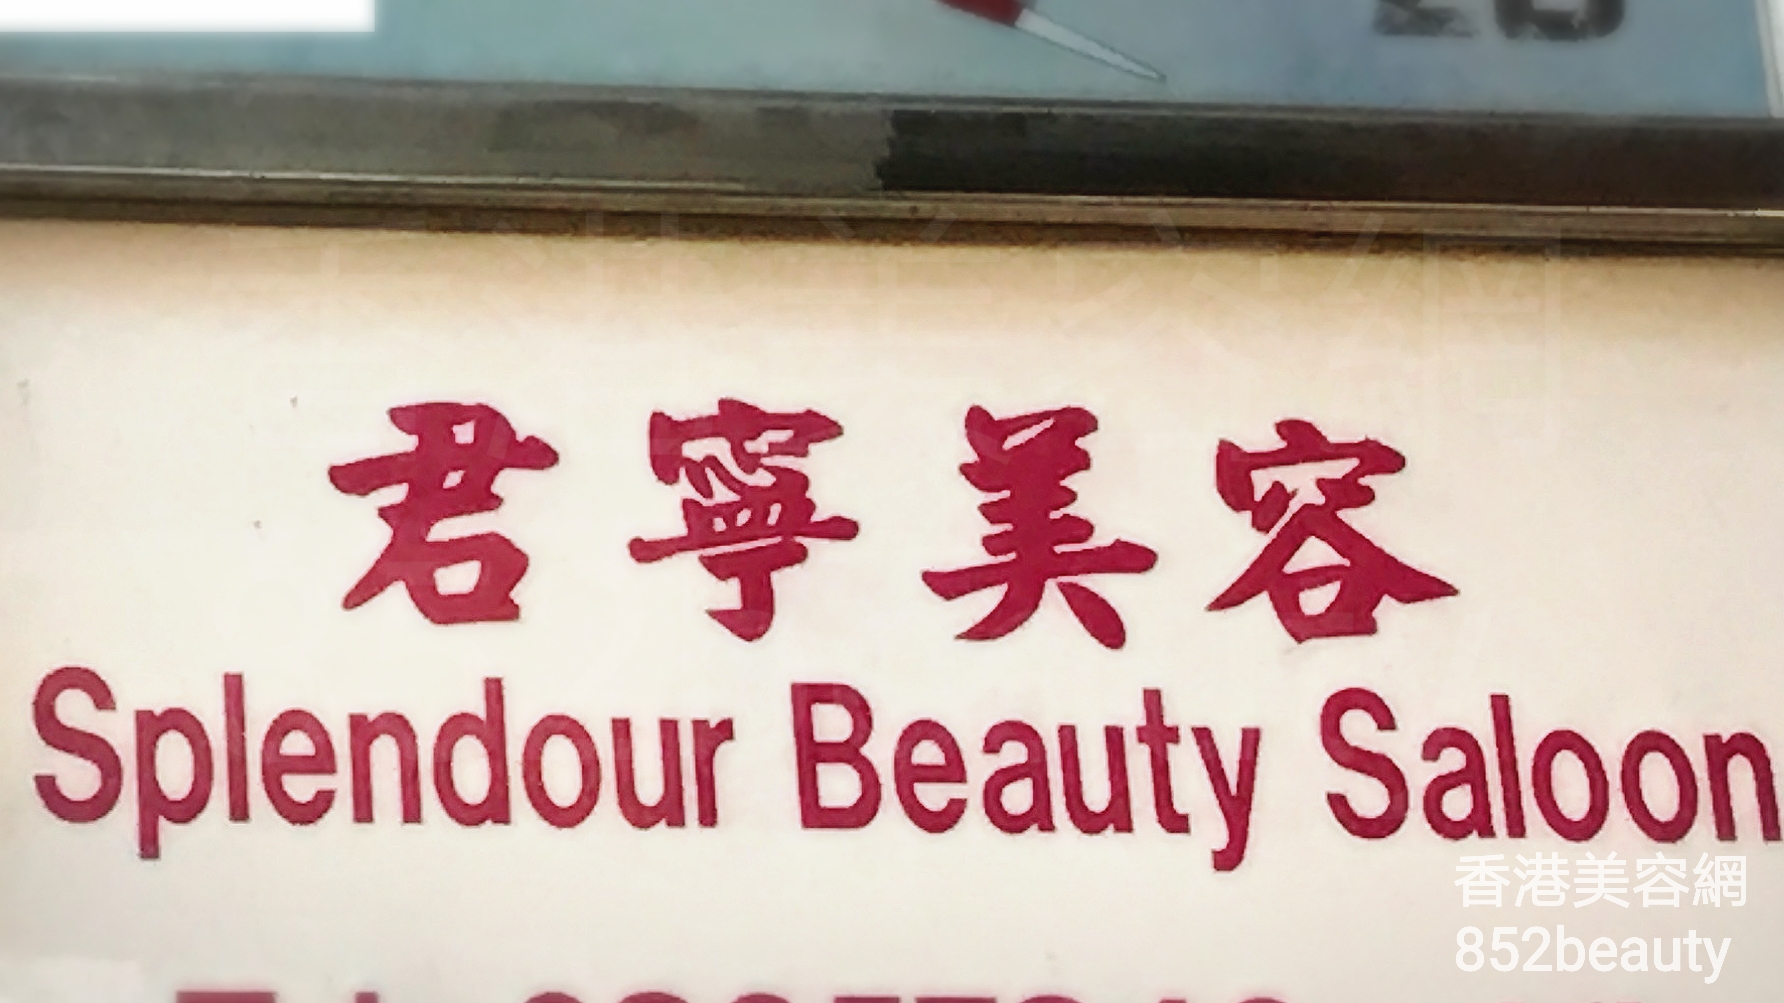 香港美容網 Hong Kong Beauty Salon 美容院 / 美容師: 君寧美容 Splendour Beauty